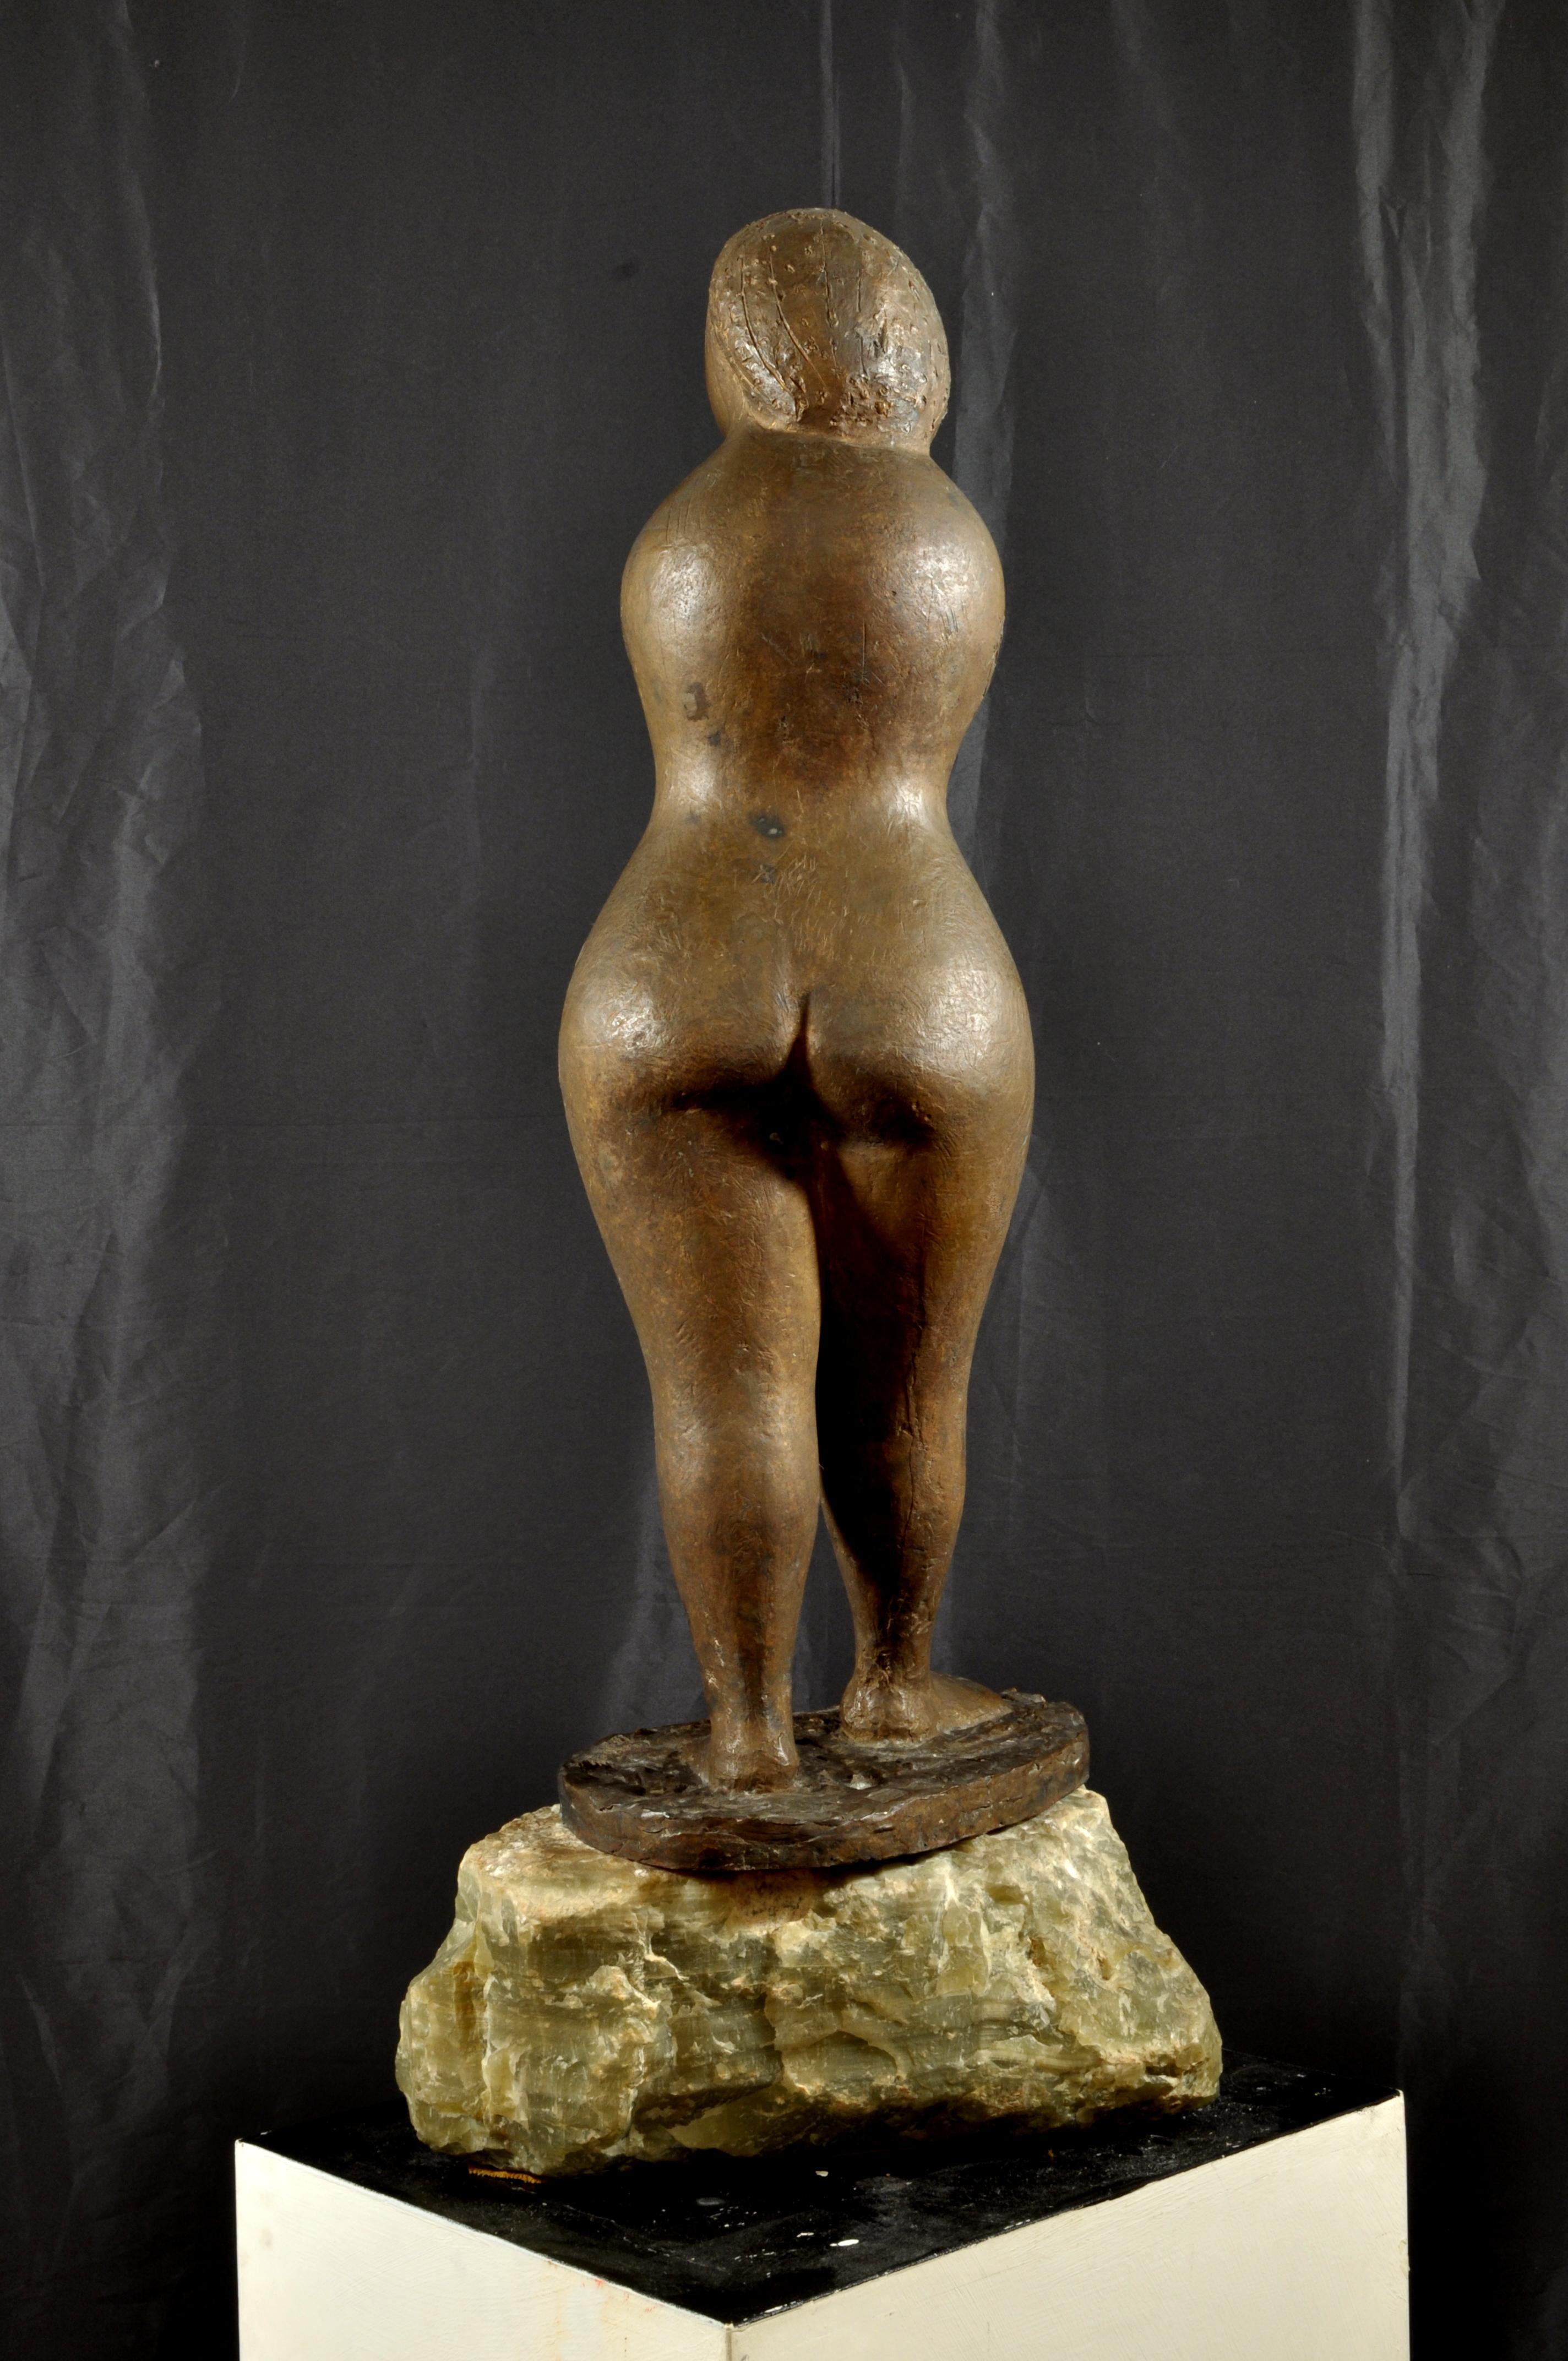 
CARMELO CAPPELLO
(Ragusa, 1912 - Milano, 1996)
La birichina (La jeune fille espiègle), 1949
Bronze, hauteur 96 cm

Pièce unique, signée et datée sur la base 